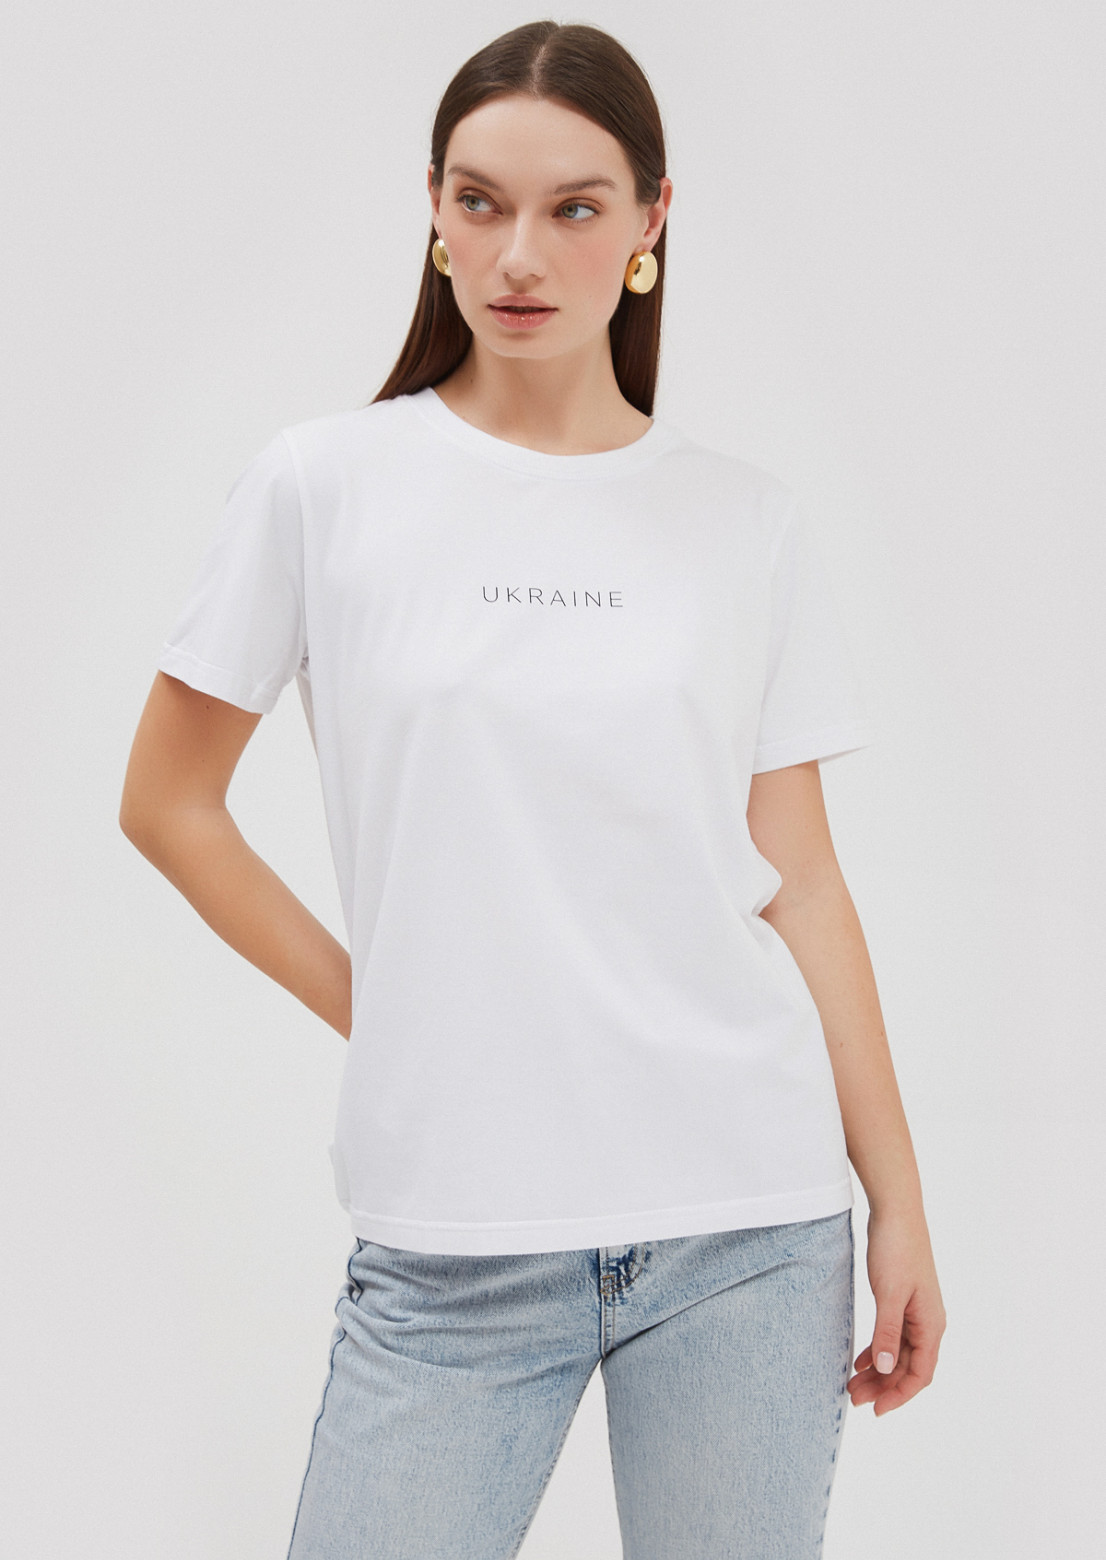 White T-shirt with print "UKRAINE"